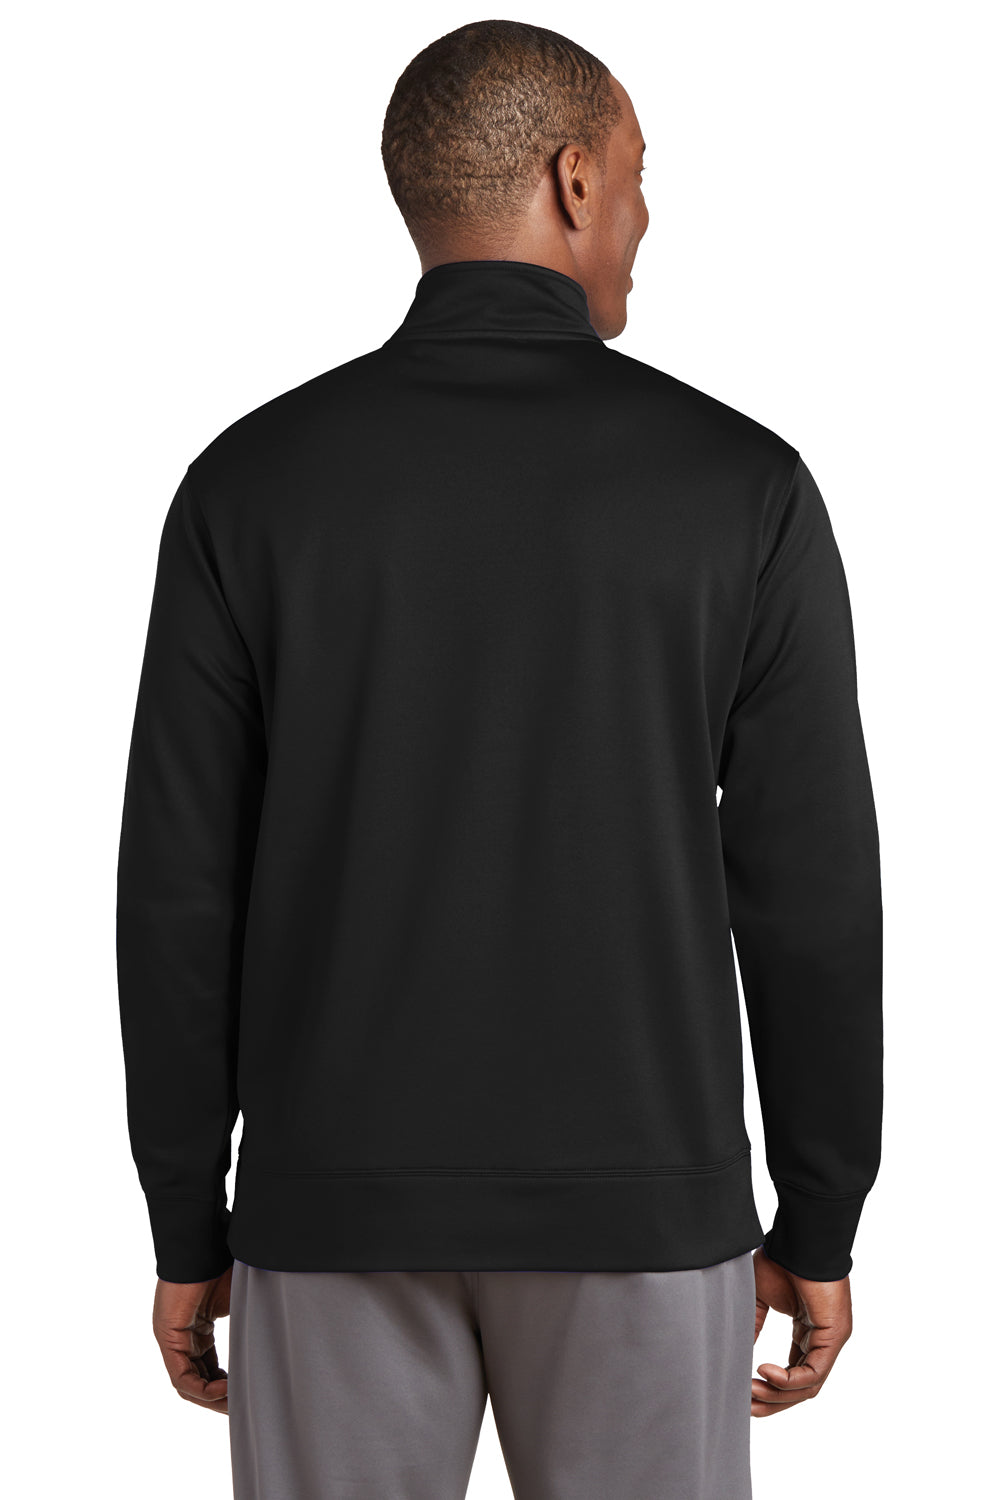 Sport-Tek ST241 Mens Sport-Wick Moisture Wicking Fleece Full Zip Sweatshirt Black Back